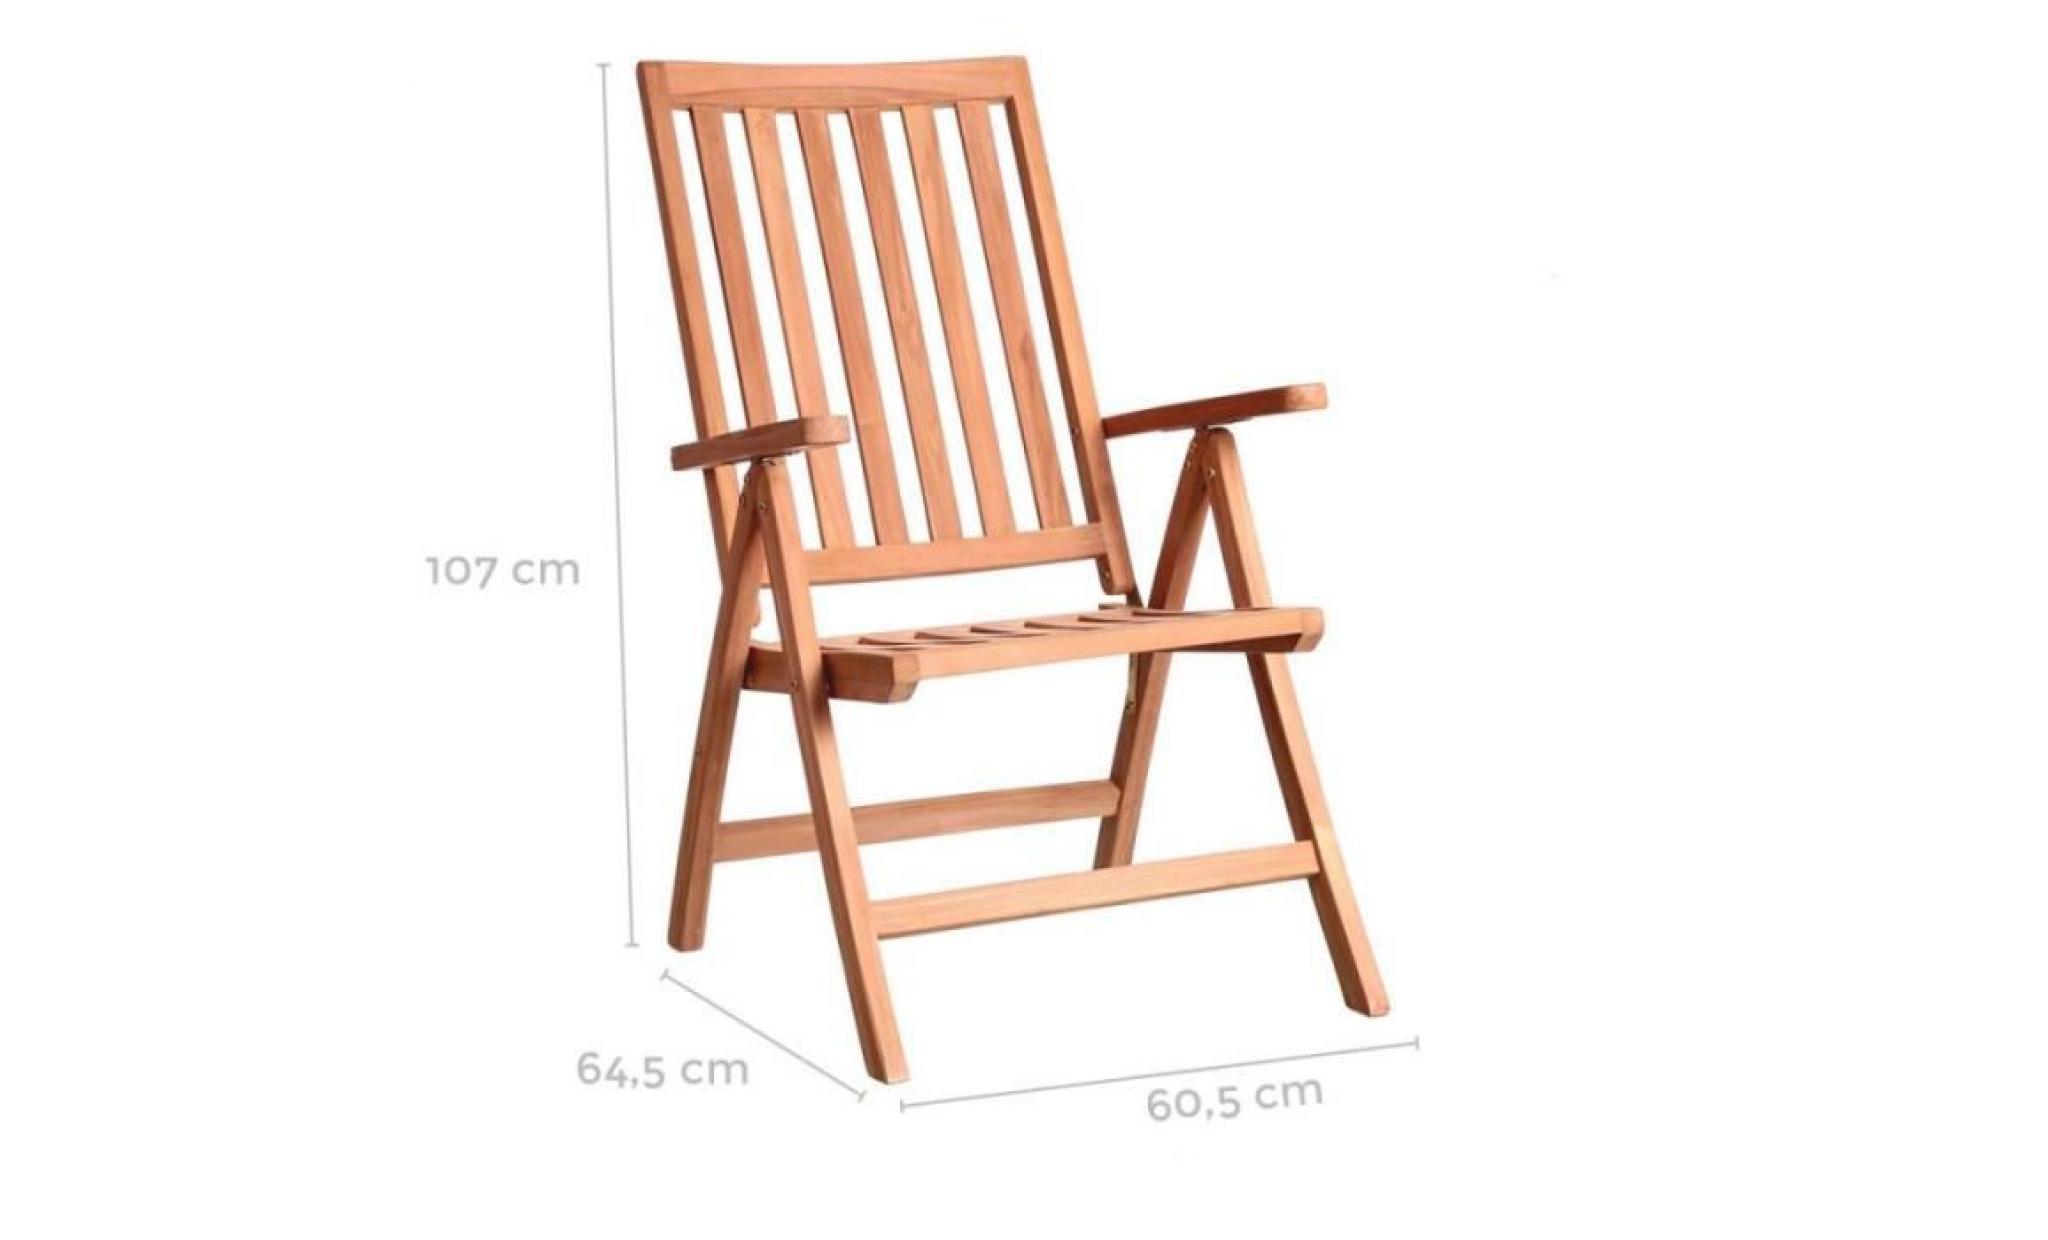 fauteuil multi positions en bois de teck   halaveli   l 61 x l 65 x h 107 pas cher